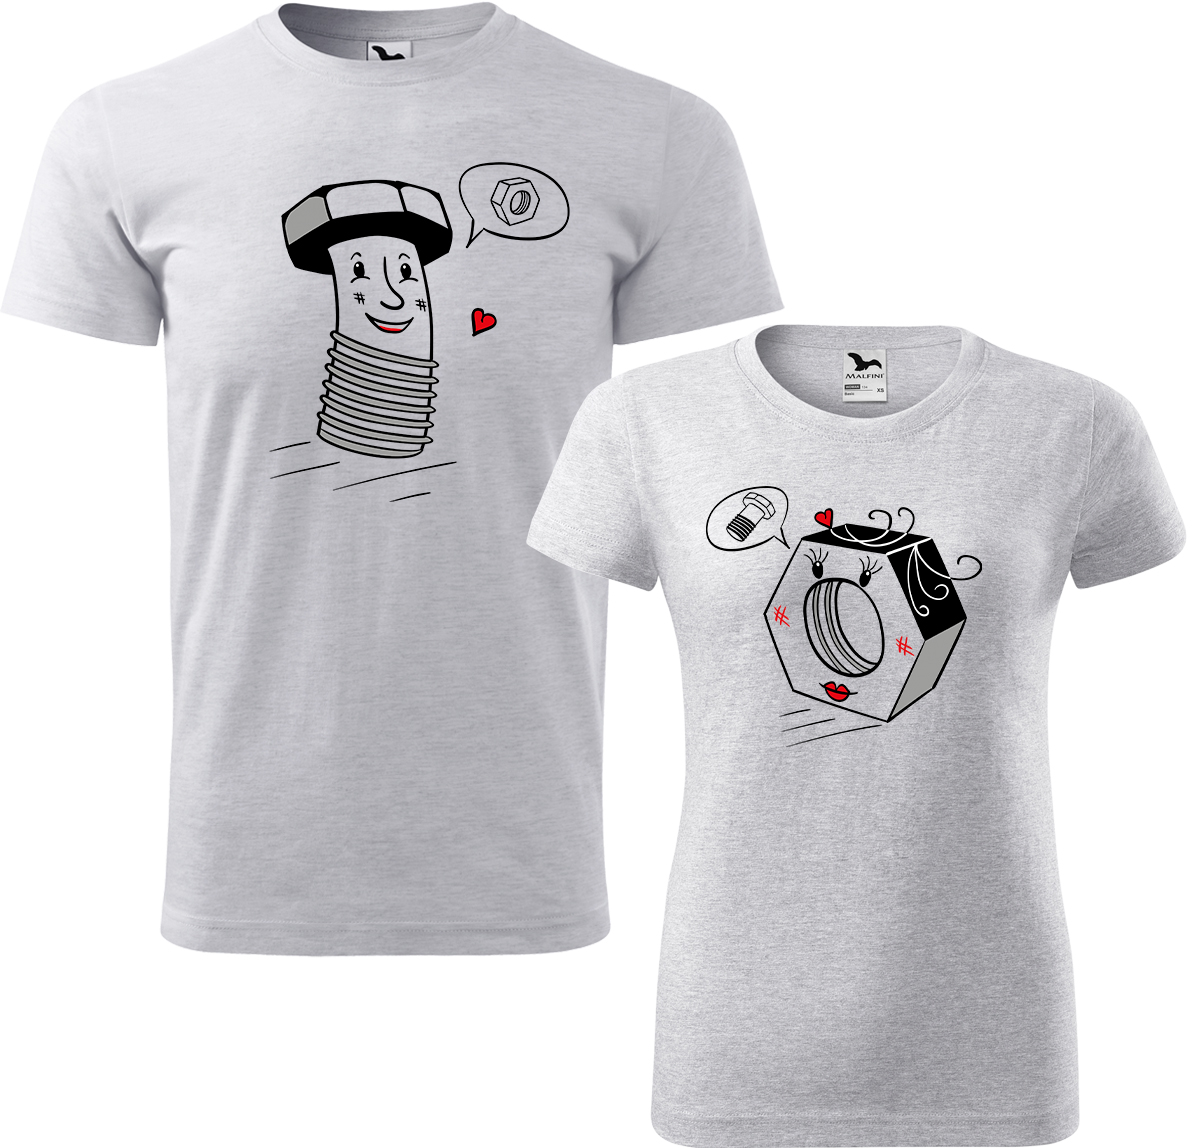 Trička pro páry - Šroubek a matička Barva: Světle šedý melír (03), Velikost dámské tričko: S, Velikost pánské tričko: XL